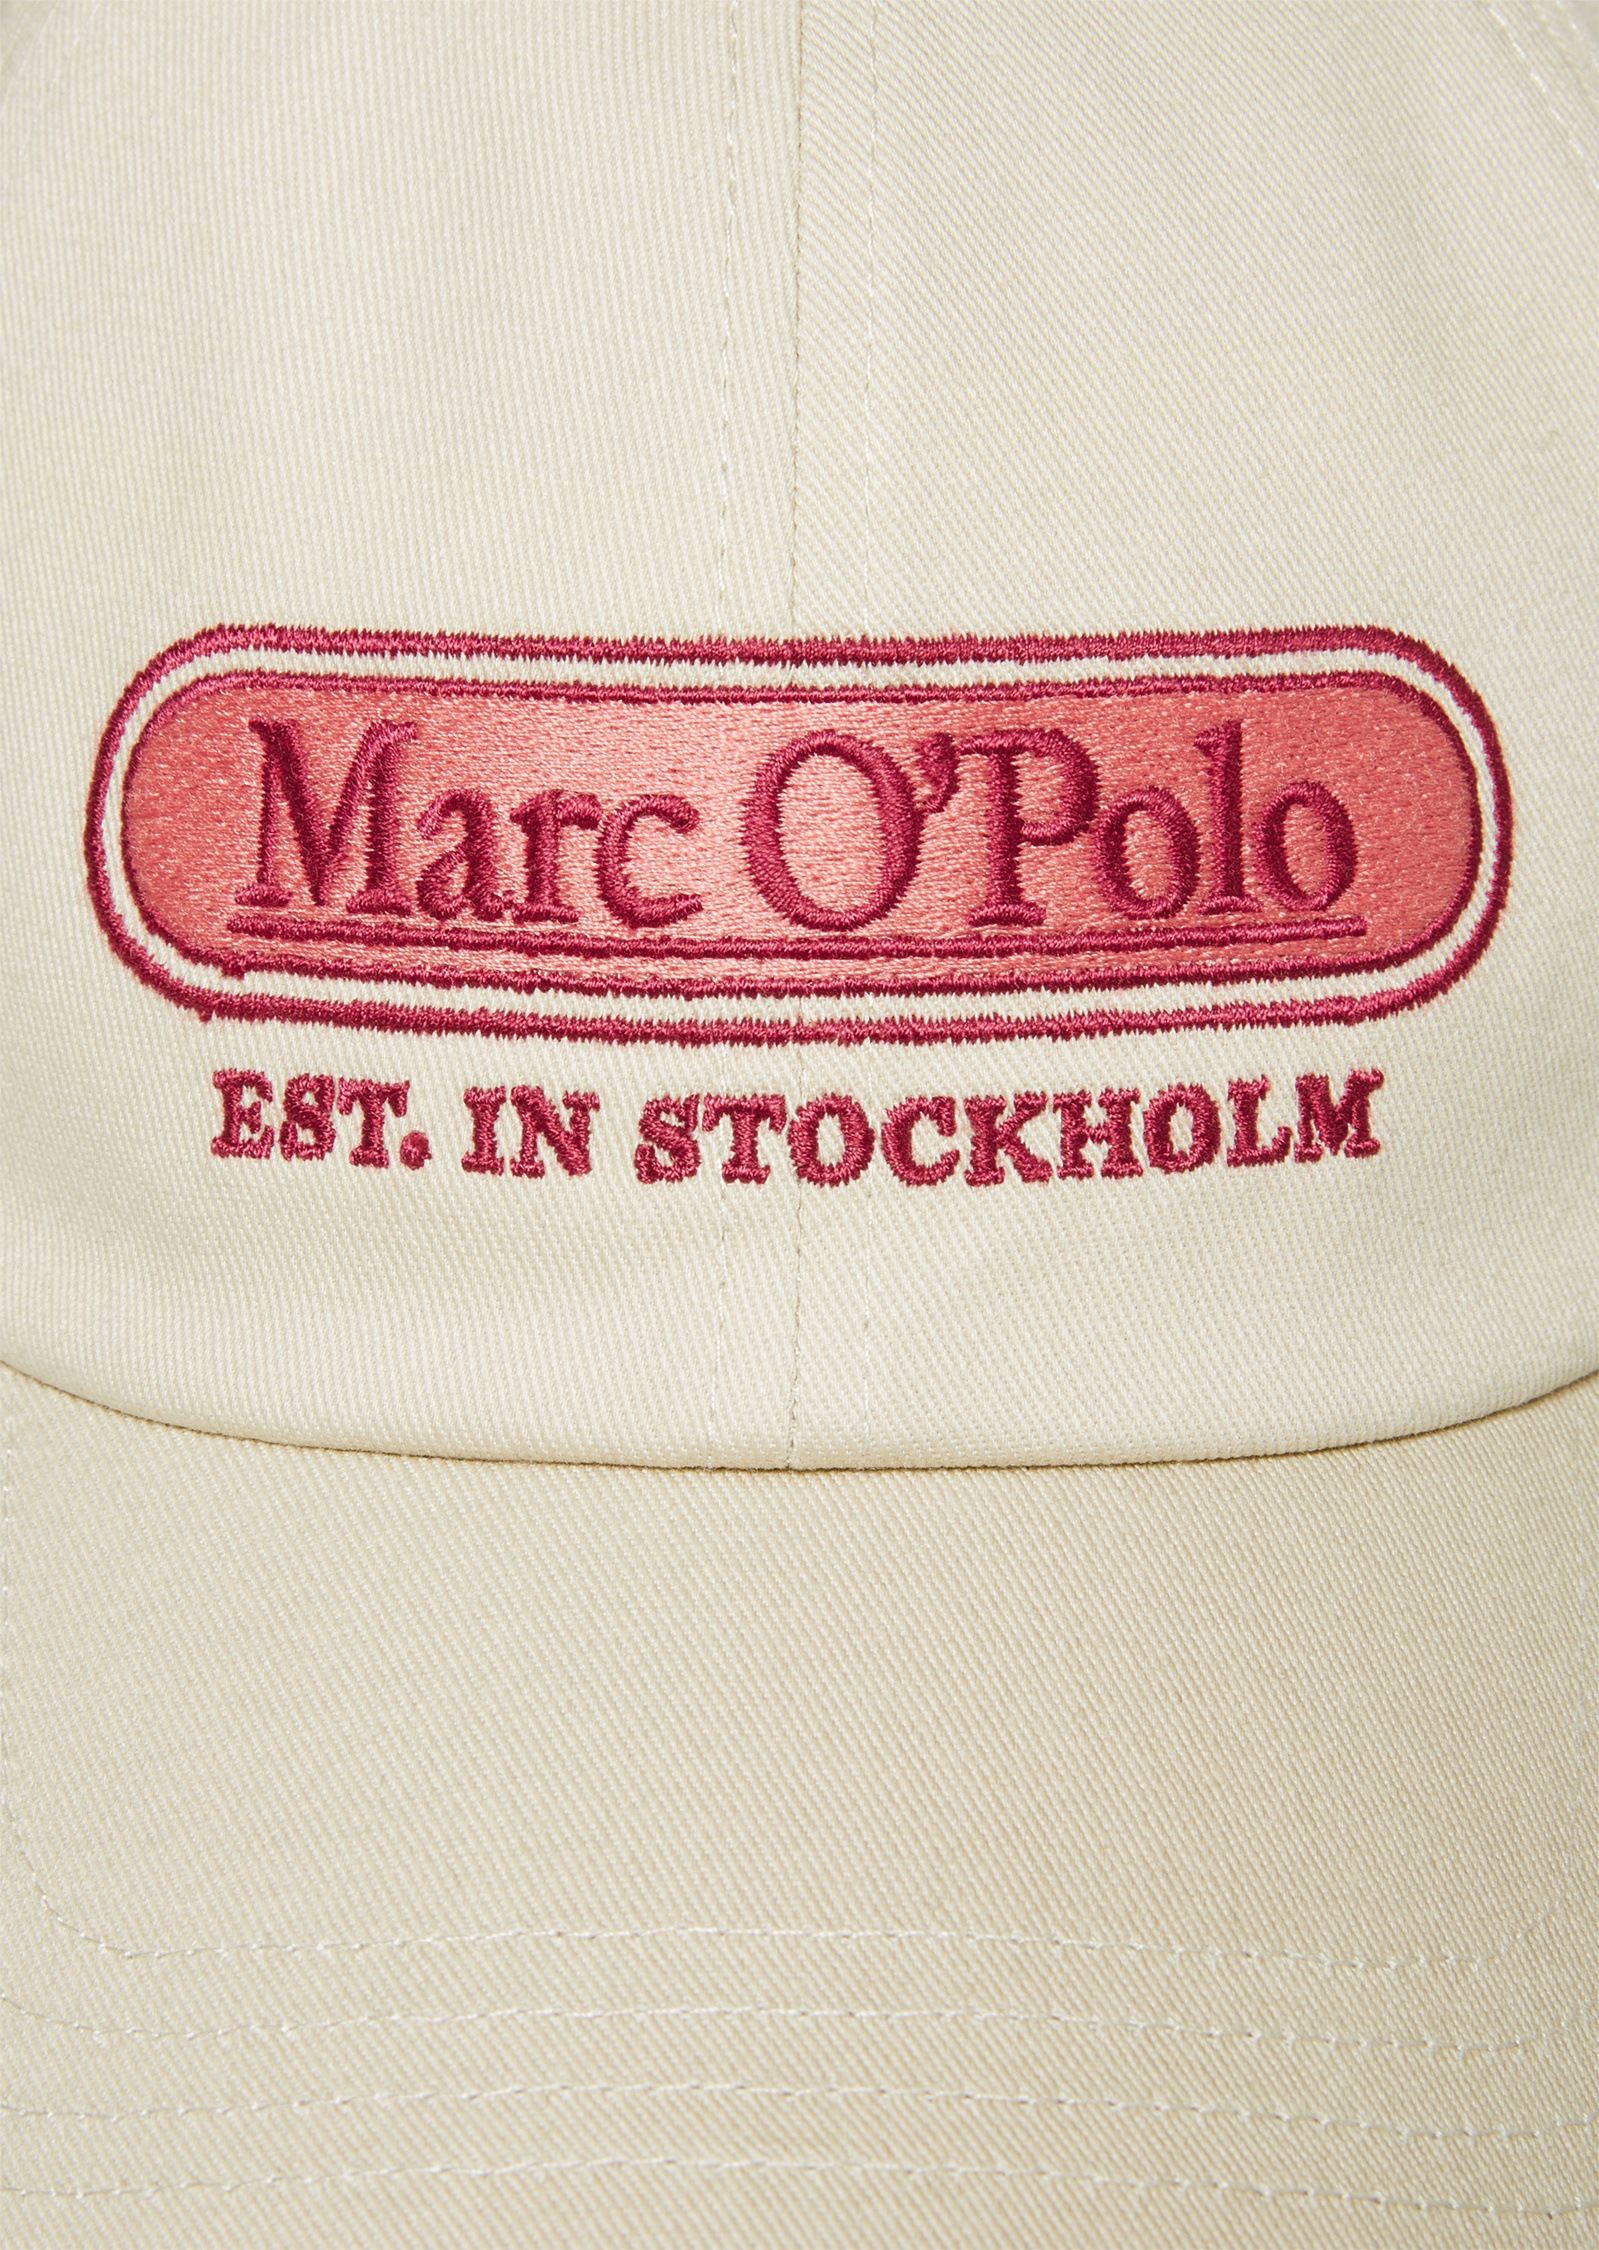 Marc O'Polo Baseball Cap »aus hochwertigem Organic-Twill«